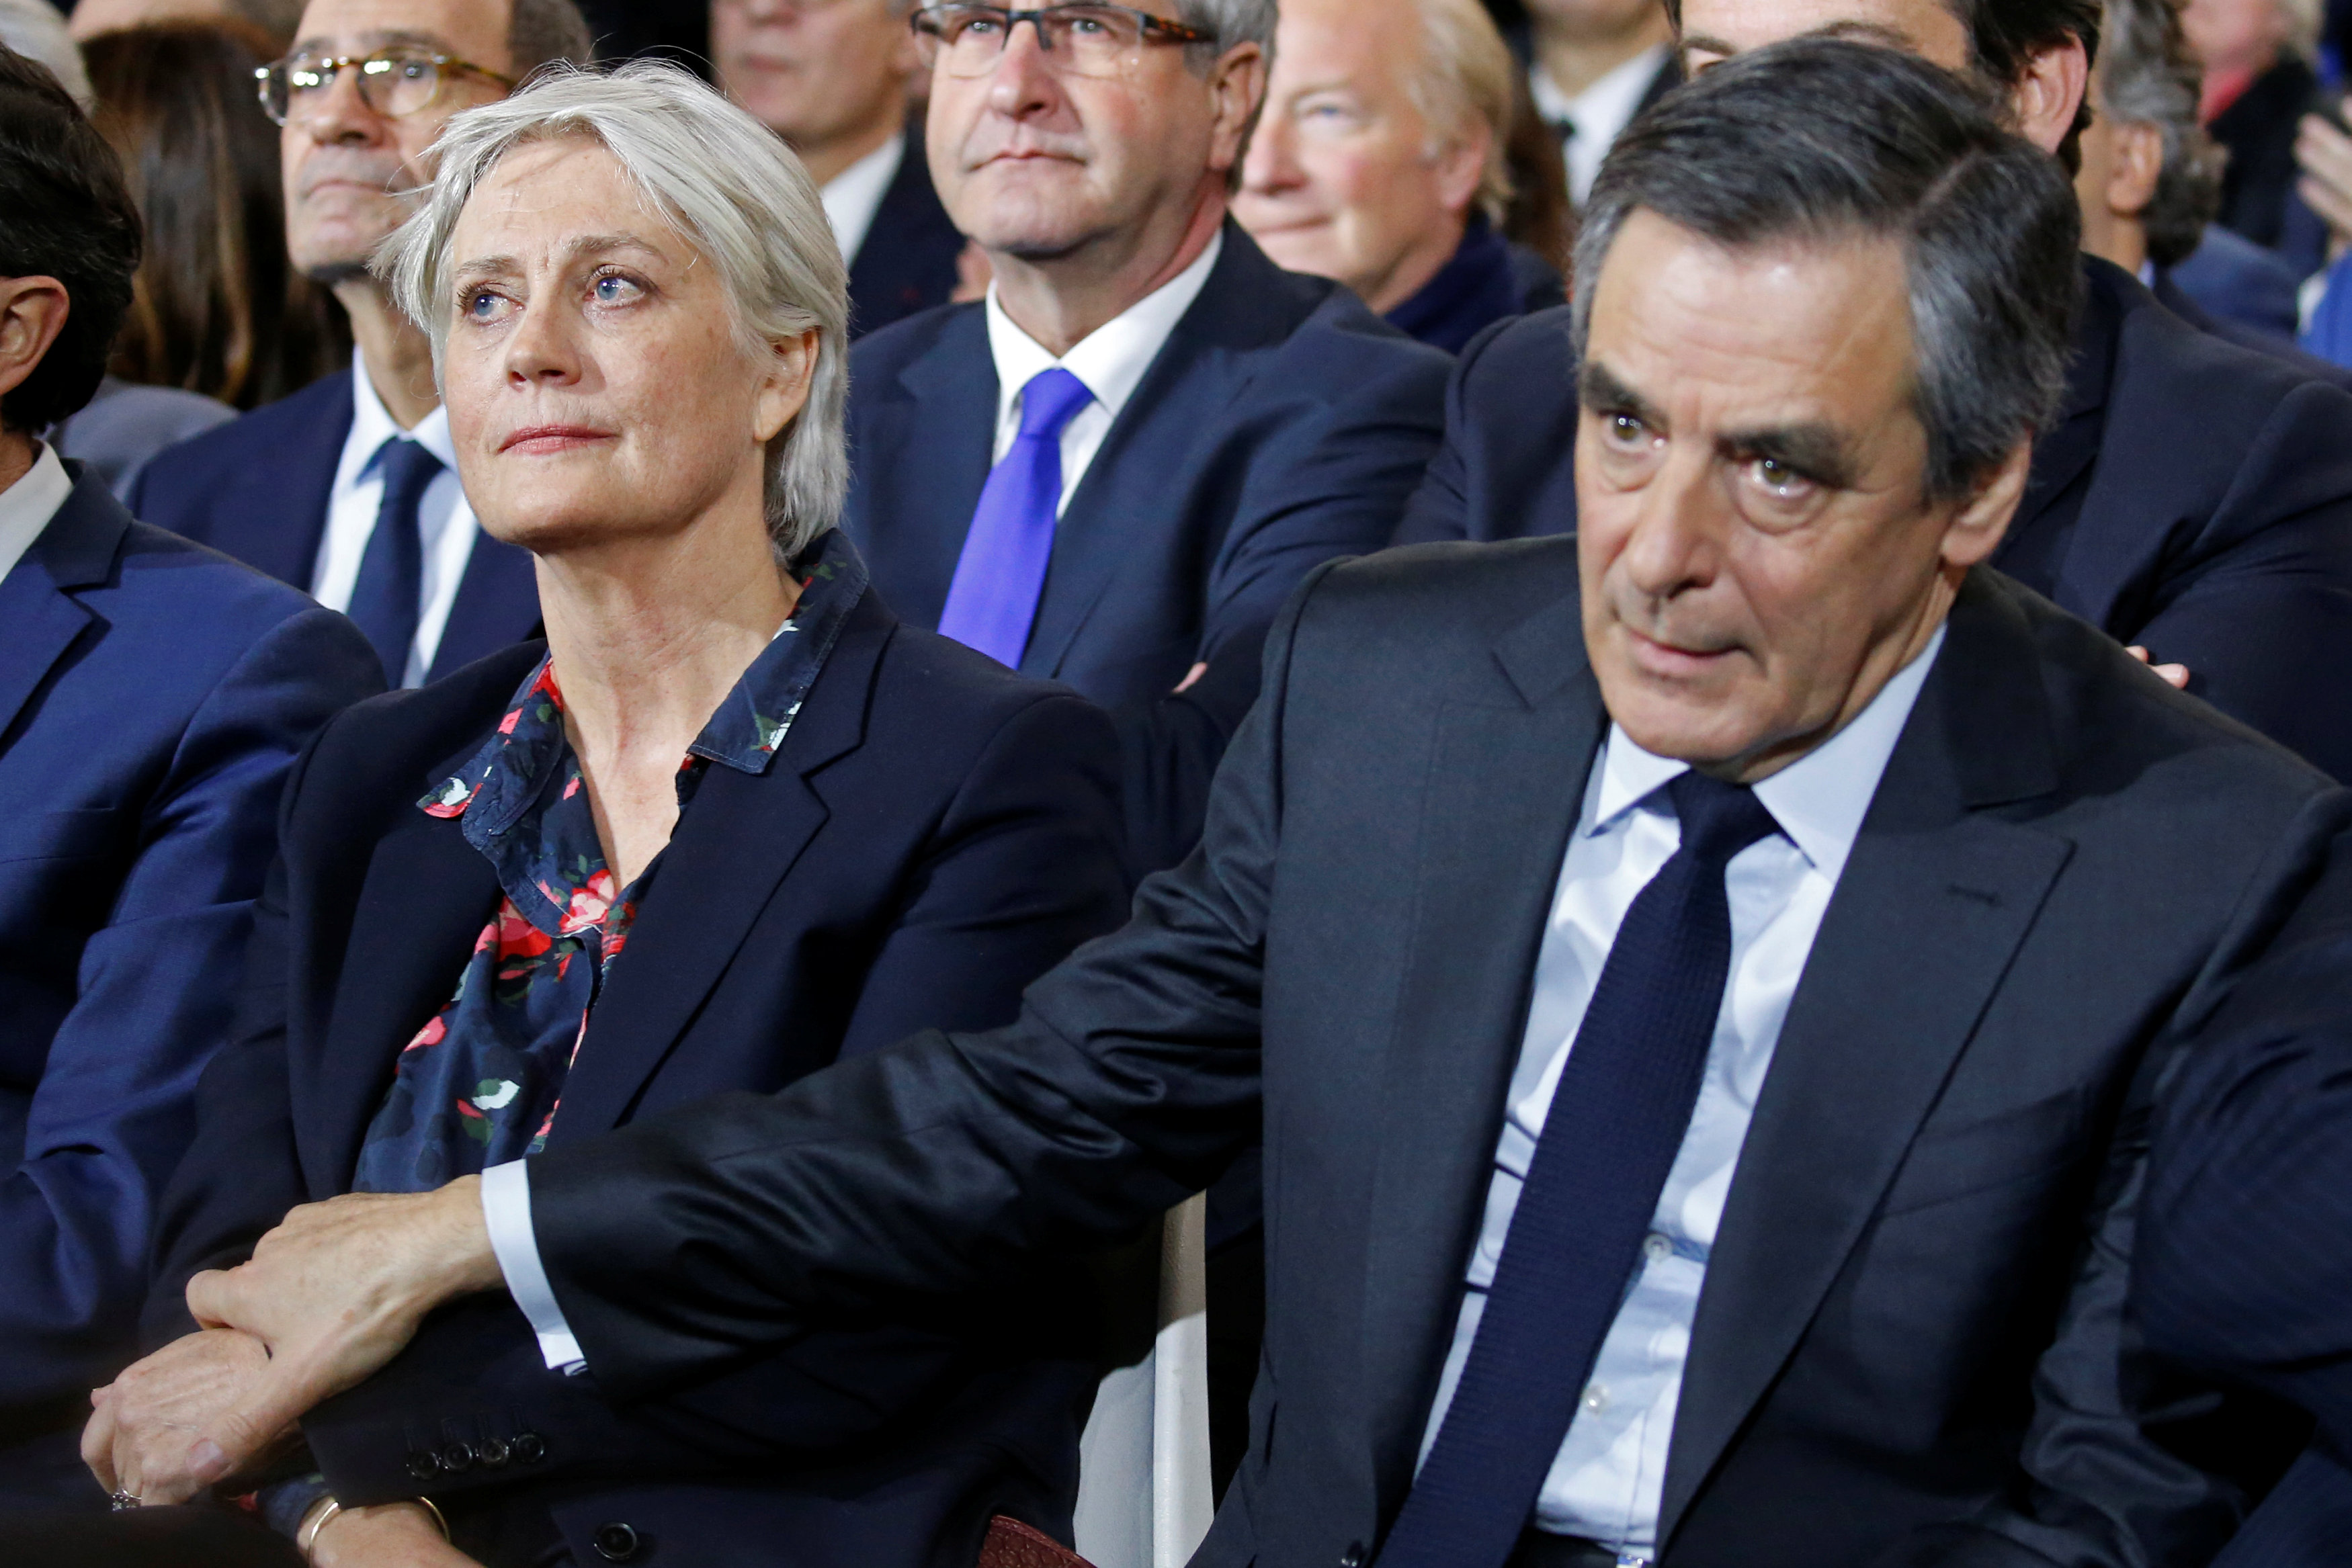 Муж премьер министра франции. Пенелопа и Франсуа Фийон. Кандидаты в премьеры Франции.